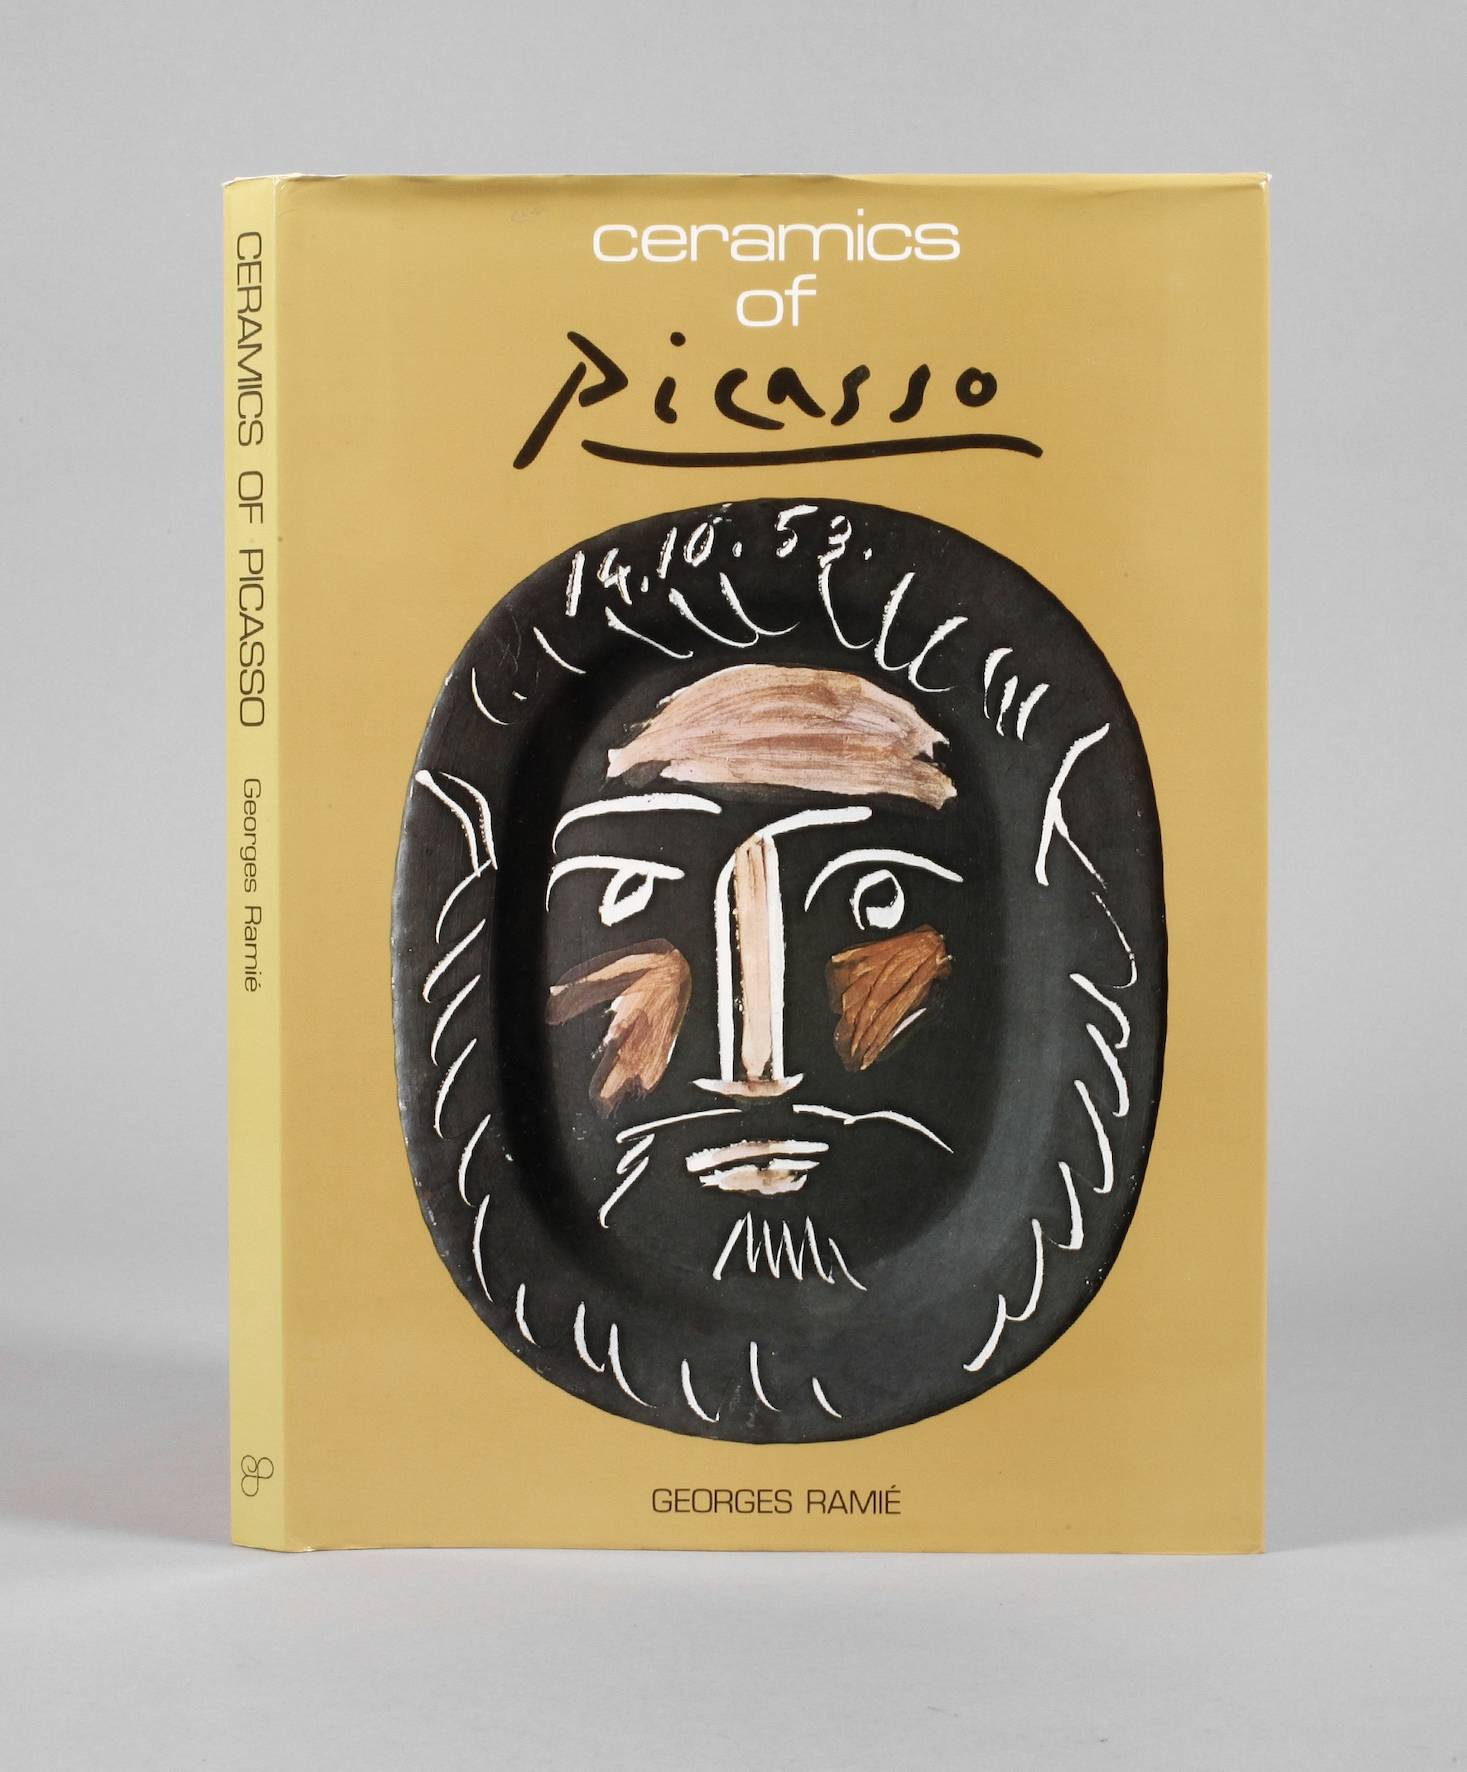 Ceramics of Picasso